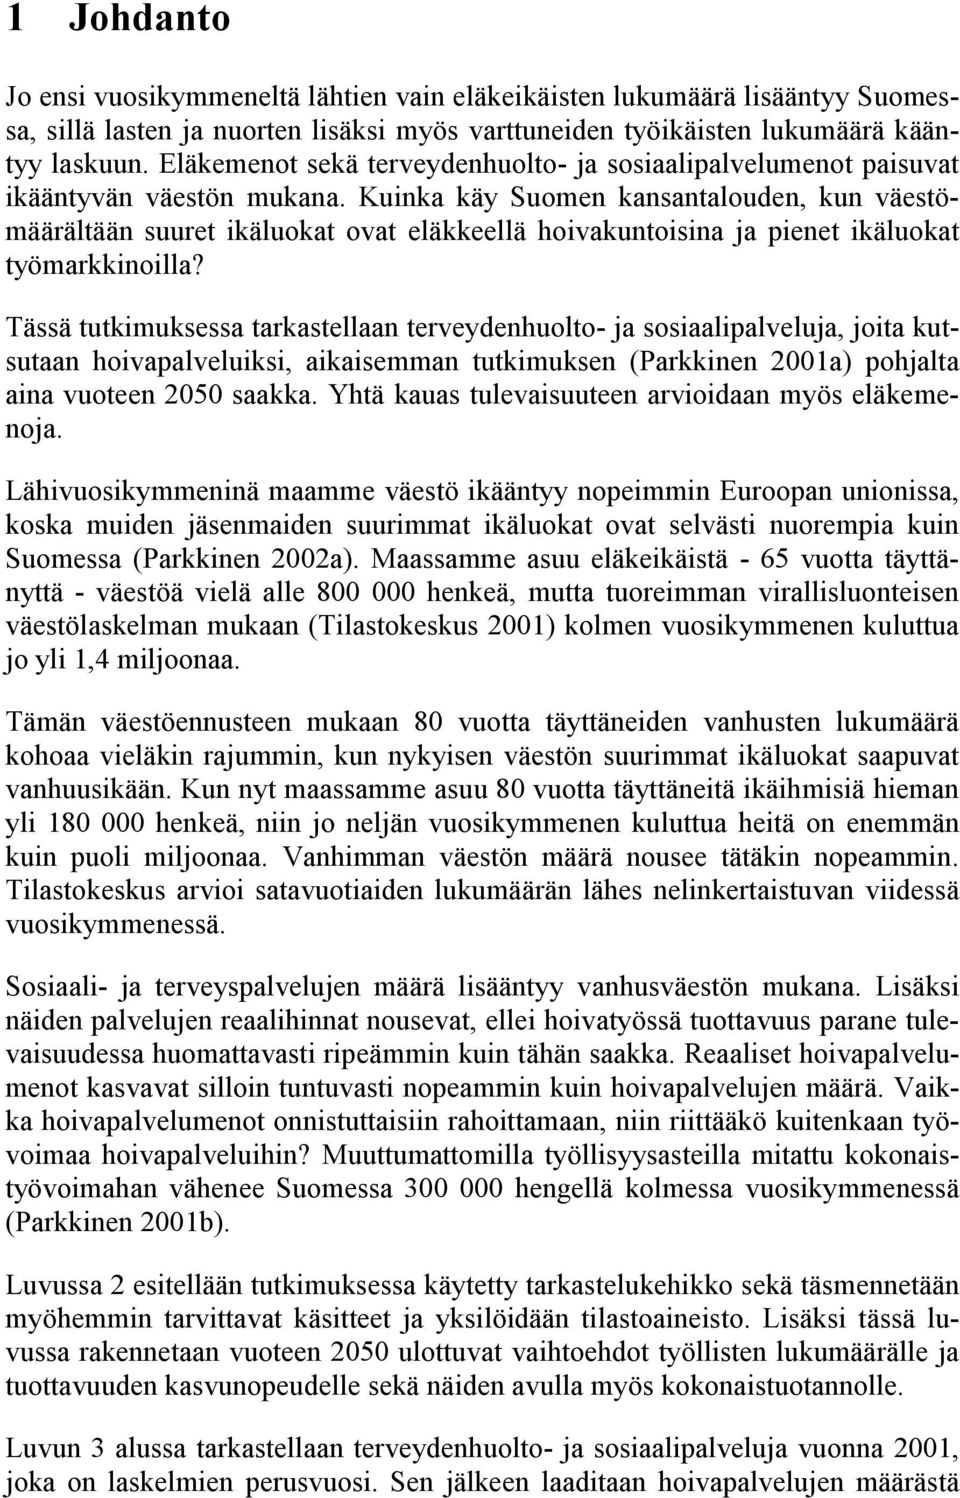 Kuinka käy Suomen kansanalouden, kun väesömäärälään suure ikäluoka ova eläkkeellä hoivakunoisina ja piene ikäluoka yömarkkinoilla?